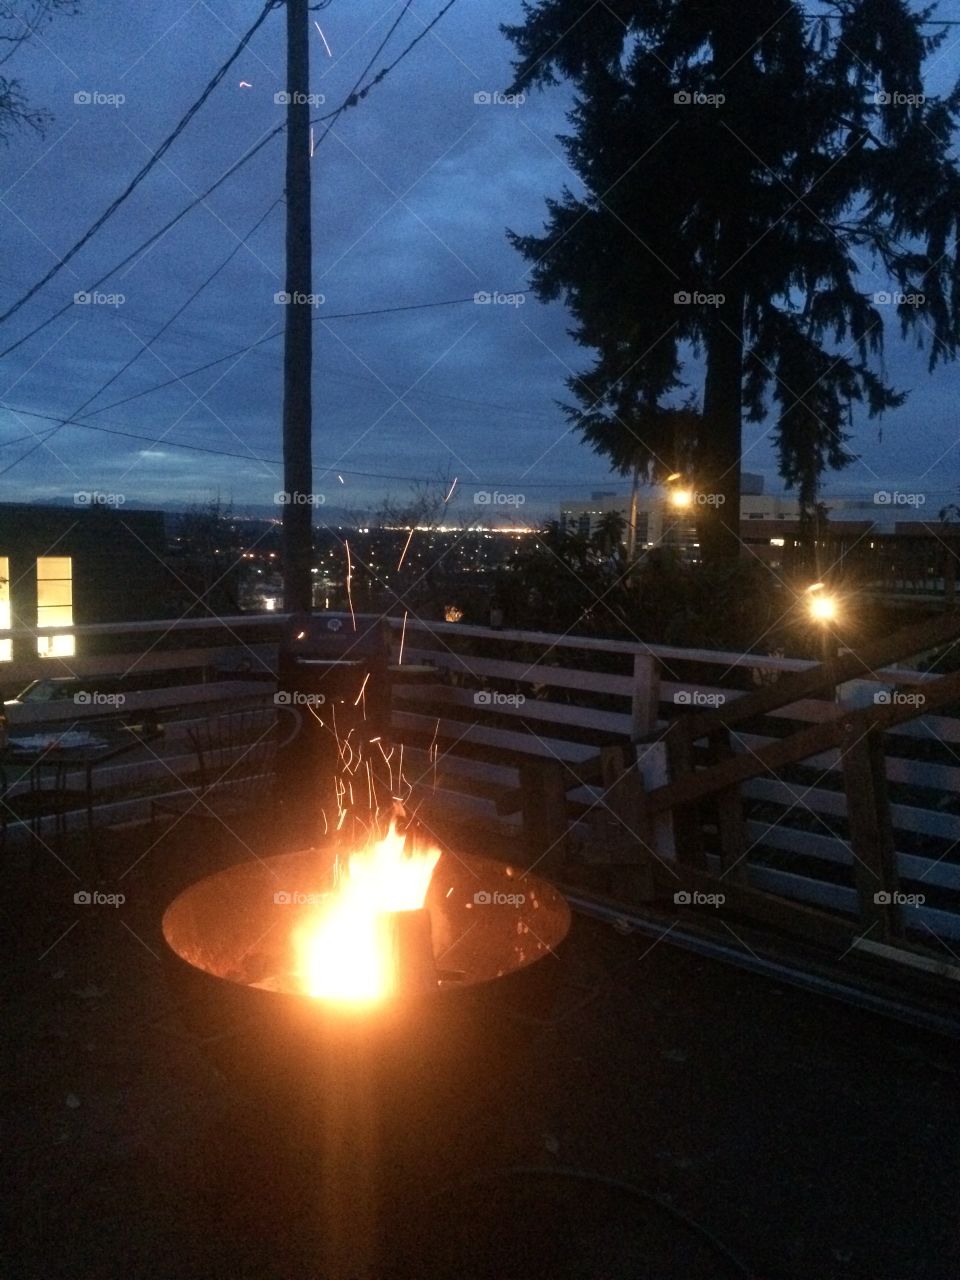 Evening bonfire 